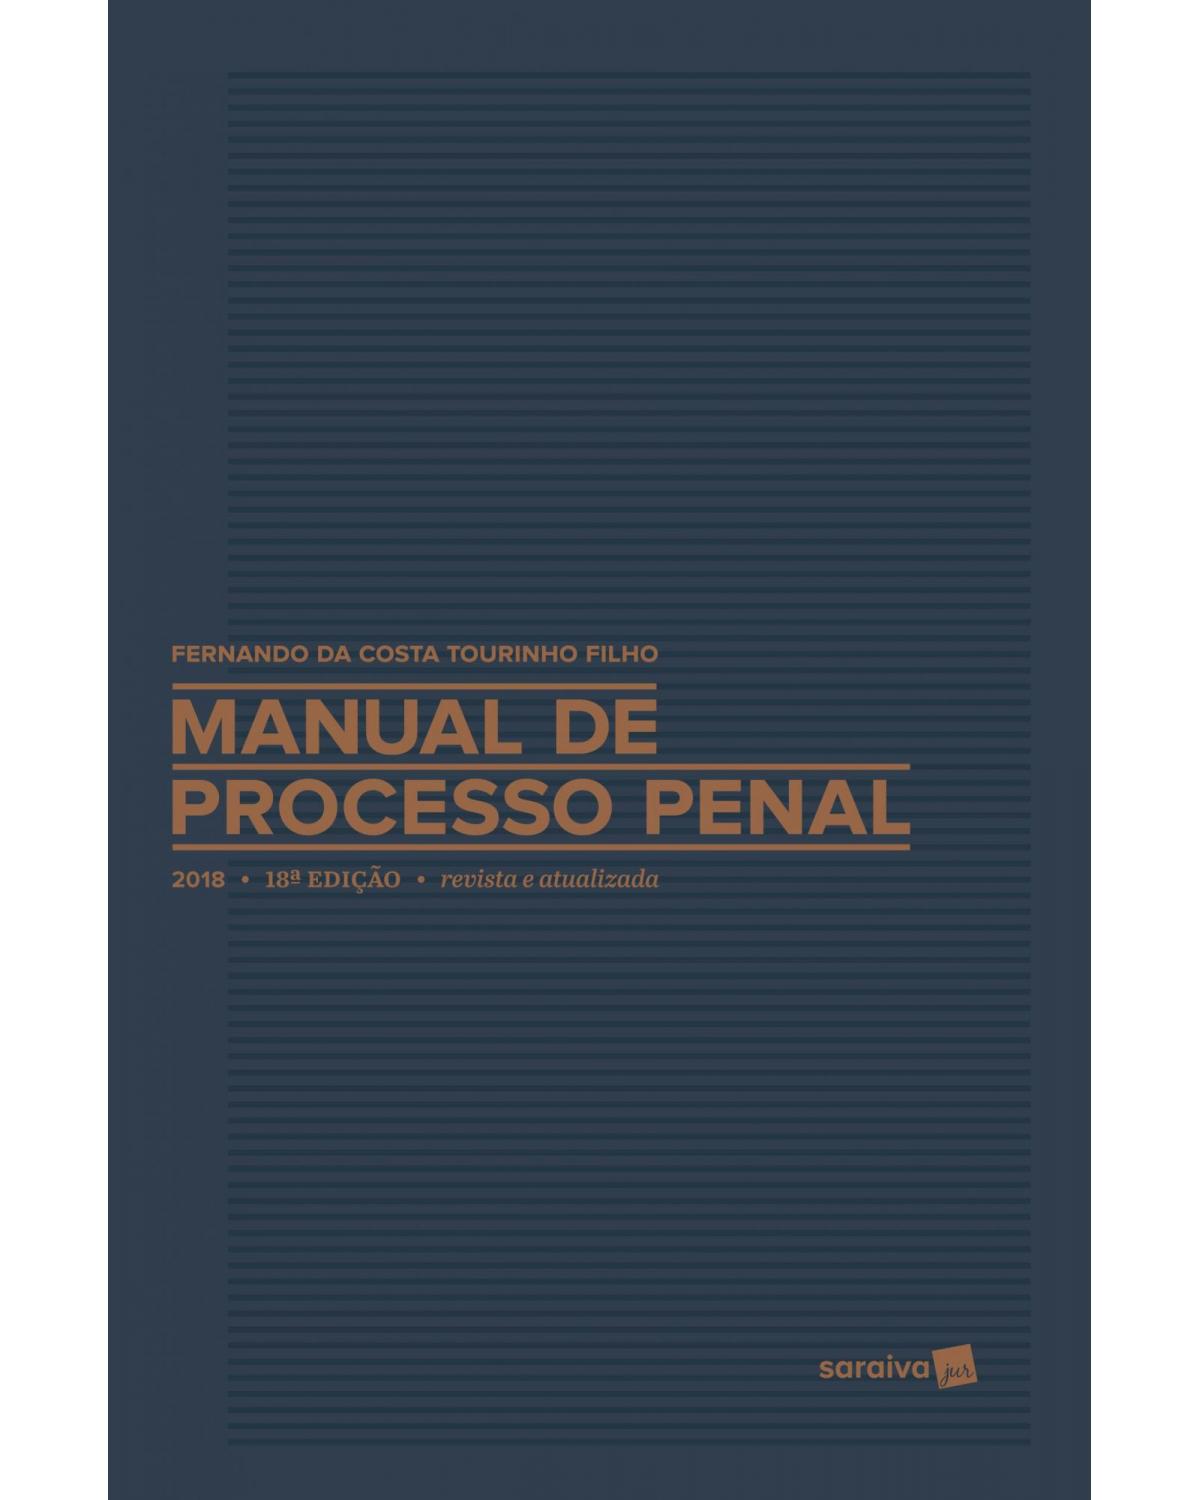 Manual de processo penal - 18ª Edição | 2018